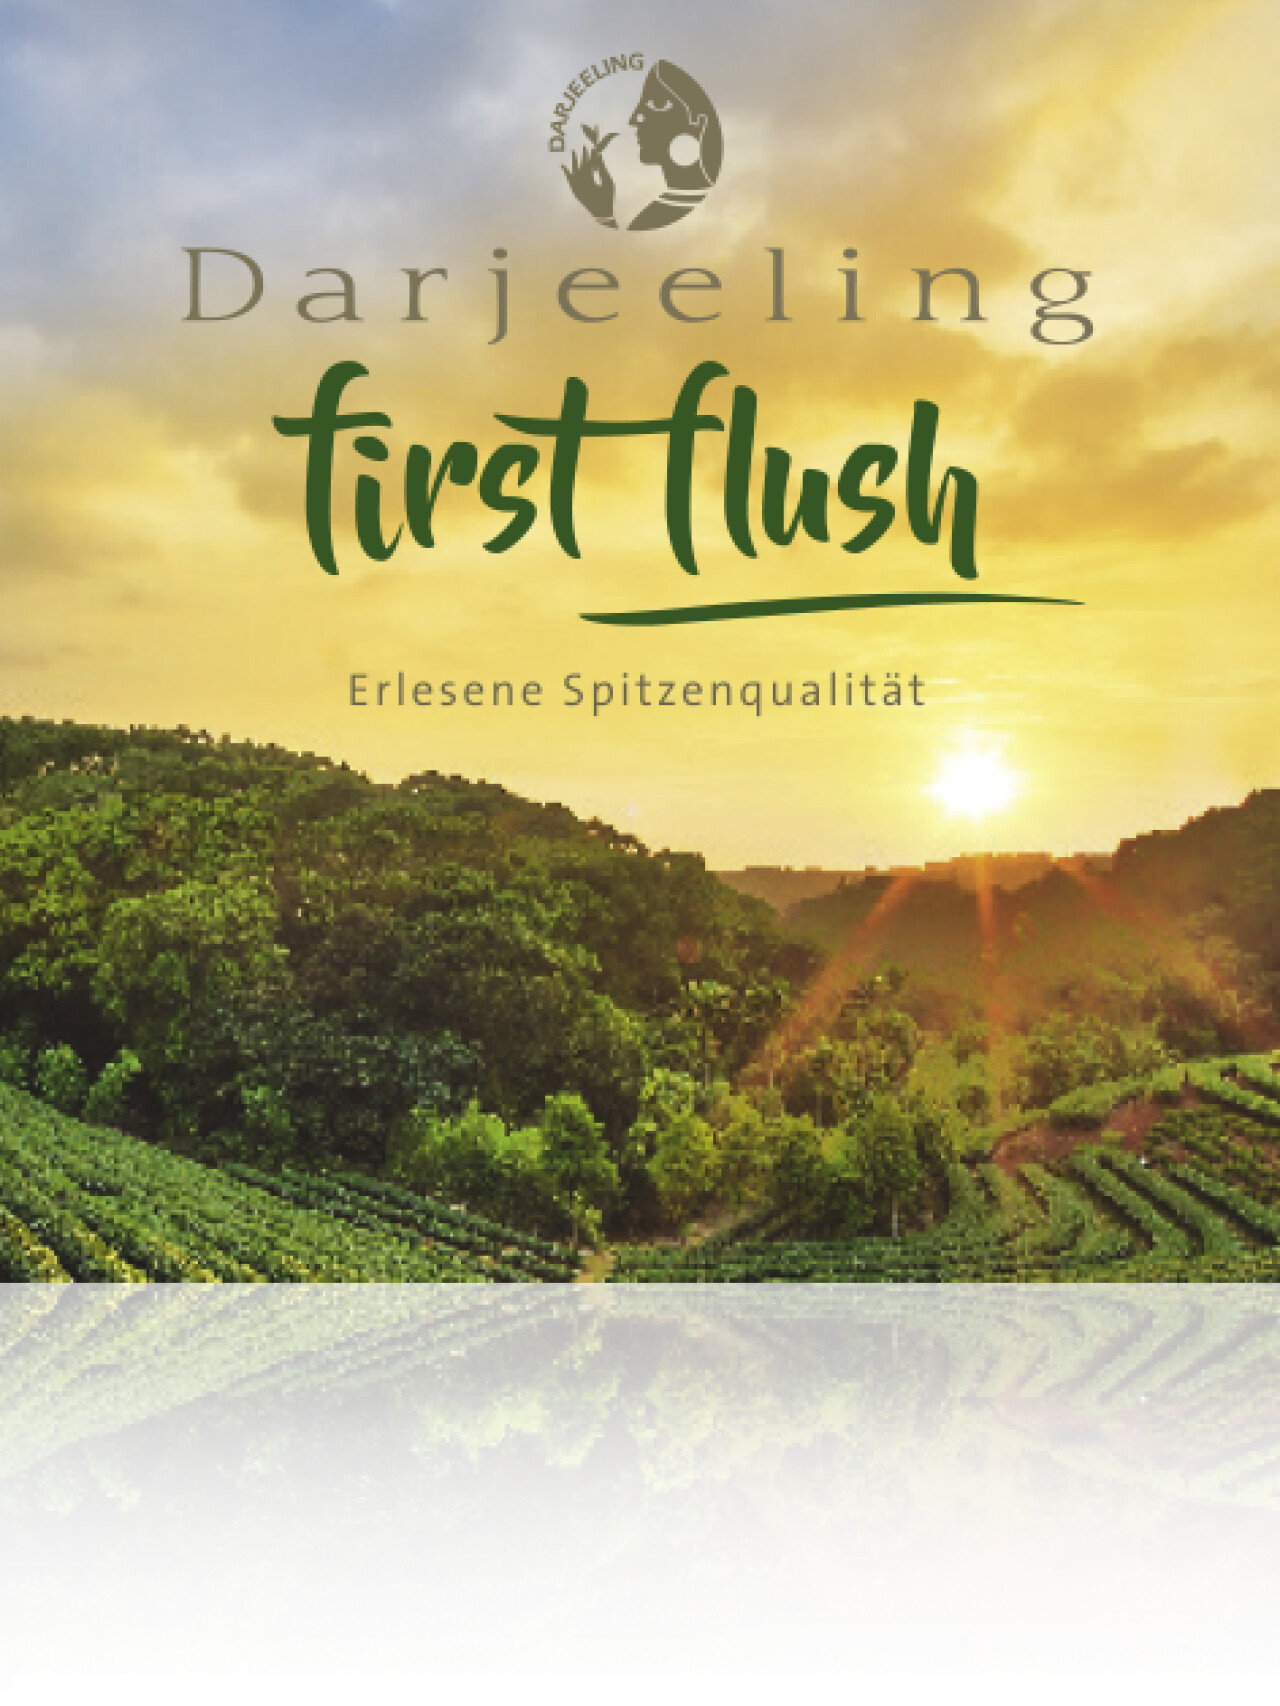 Brochure "First Flush"